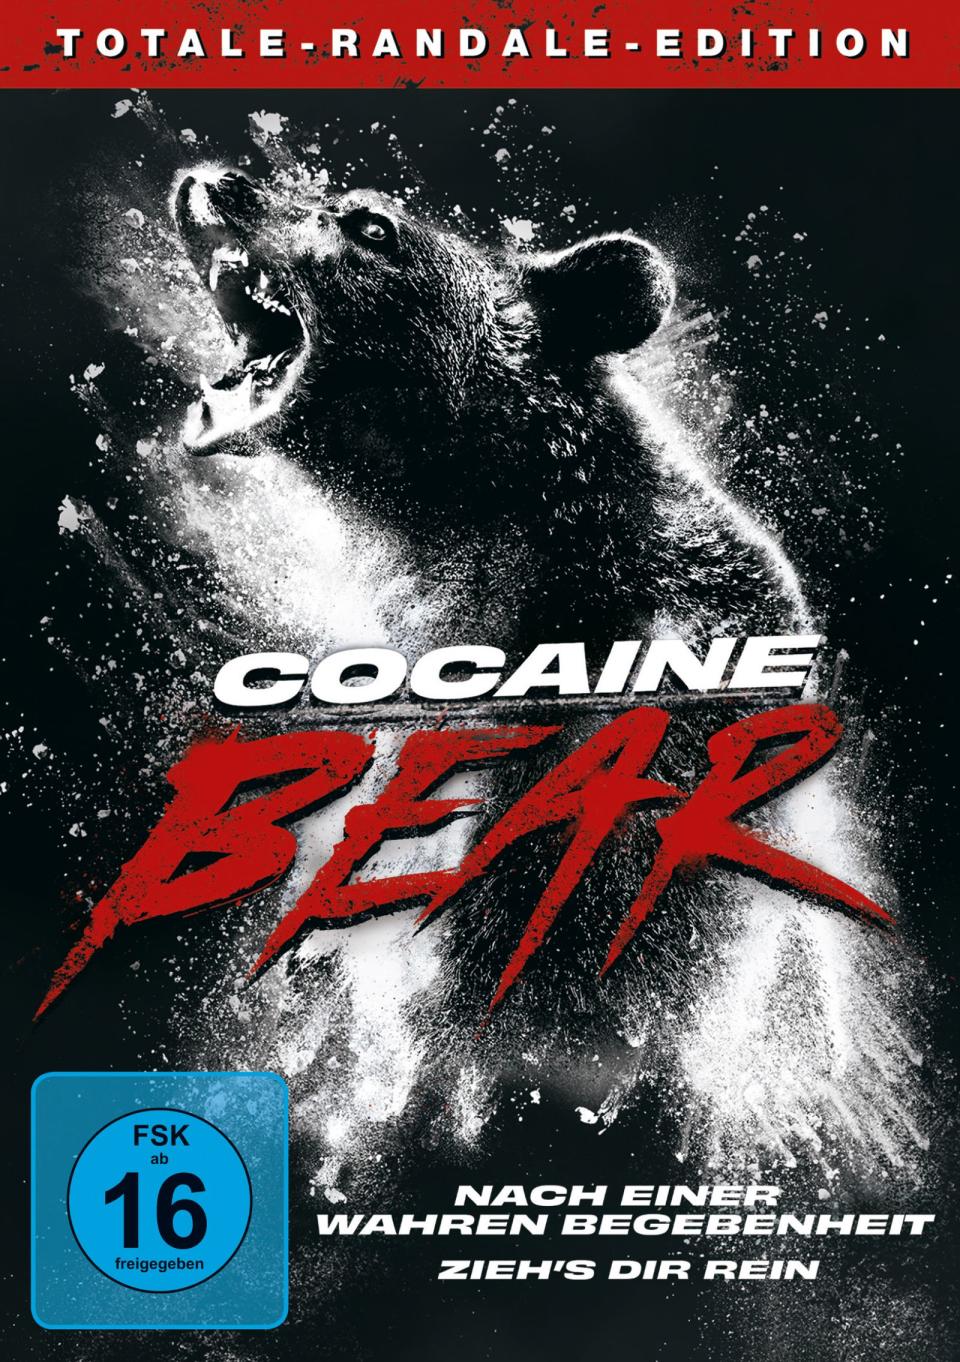 In den 80er-Jahren entdeckte ein Schwarzbär eine abgeworfene Ladung Kokain, die ihm jedoch nicht gut bekam. Daraus wurde nun die Horror-Komödie "Cocaine Bär". (Bild: Universal Studios)